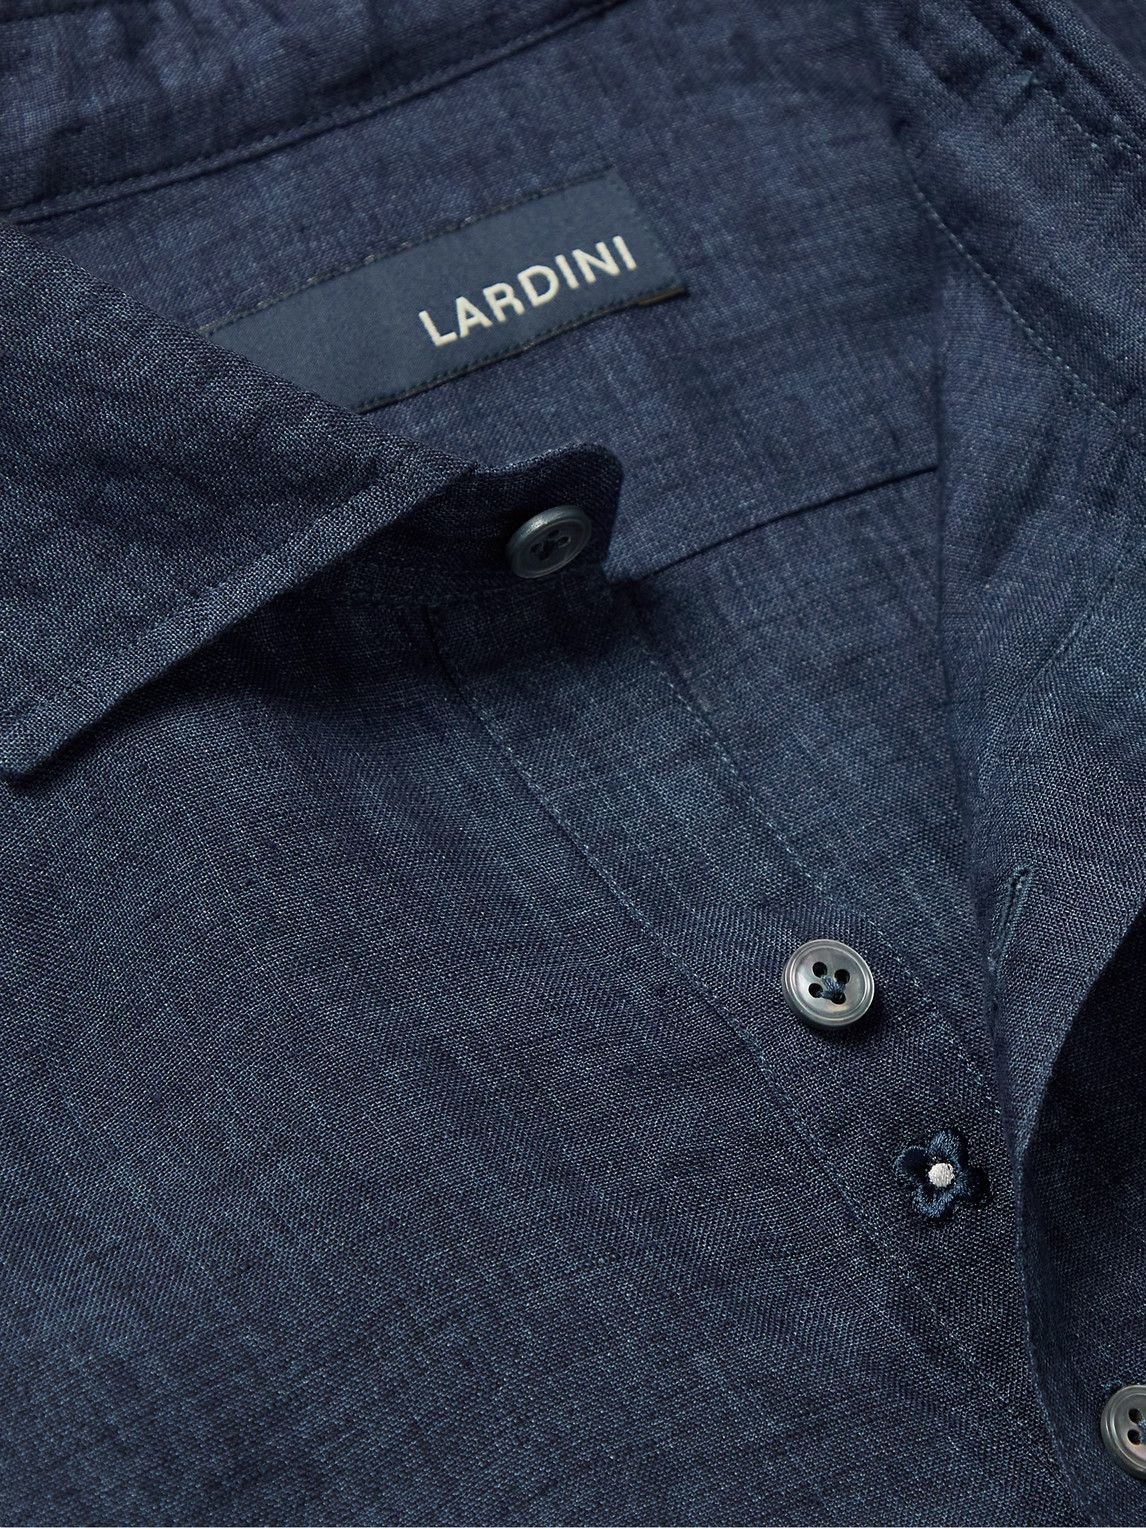 Lardini - Linen Half-Placket Shirt - Blue Lardini